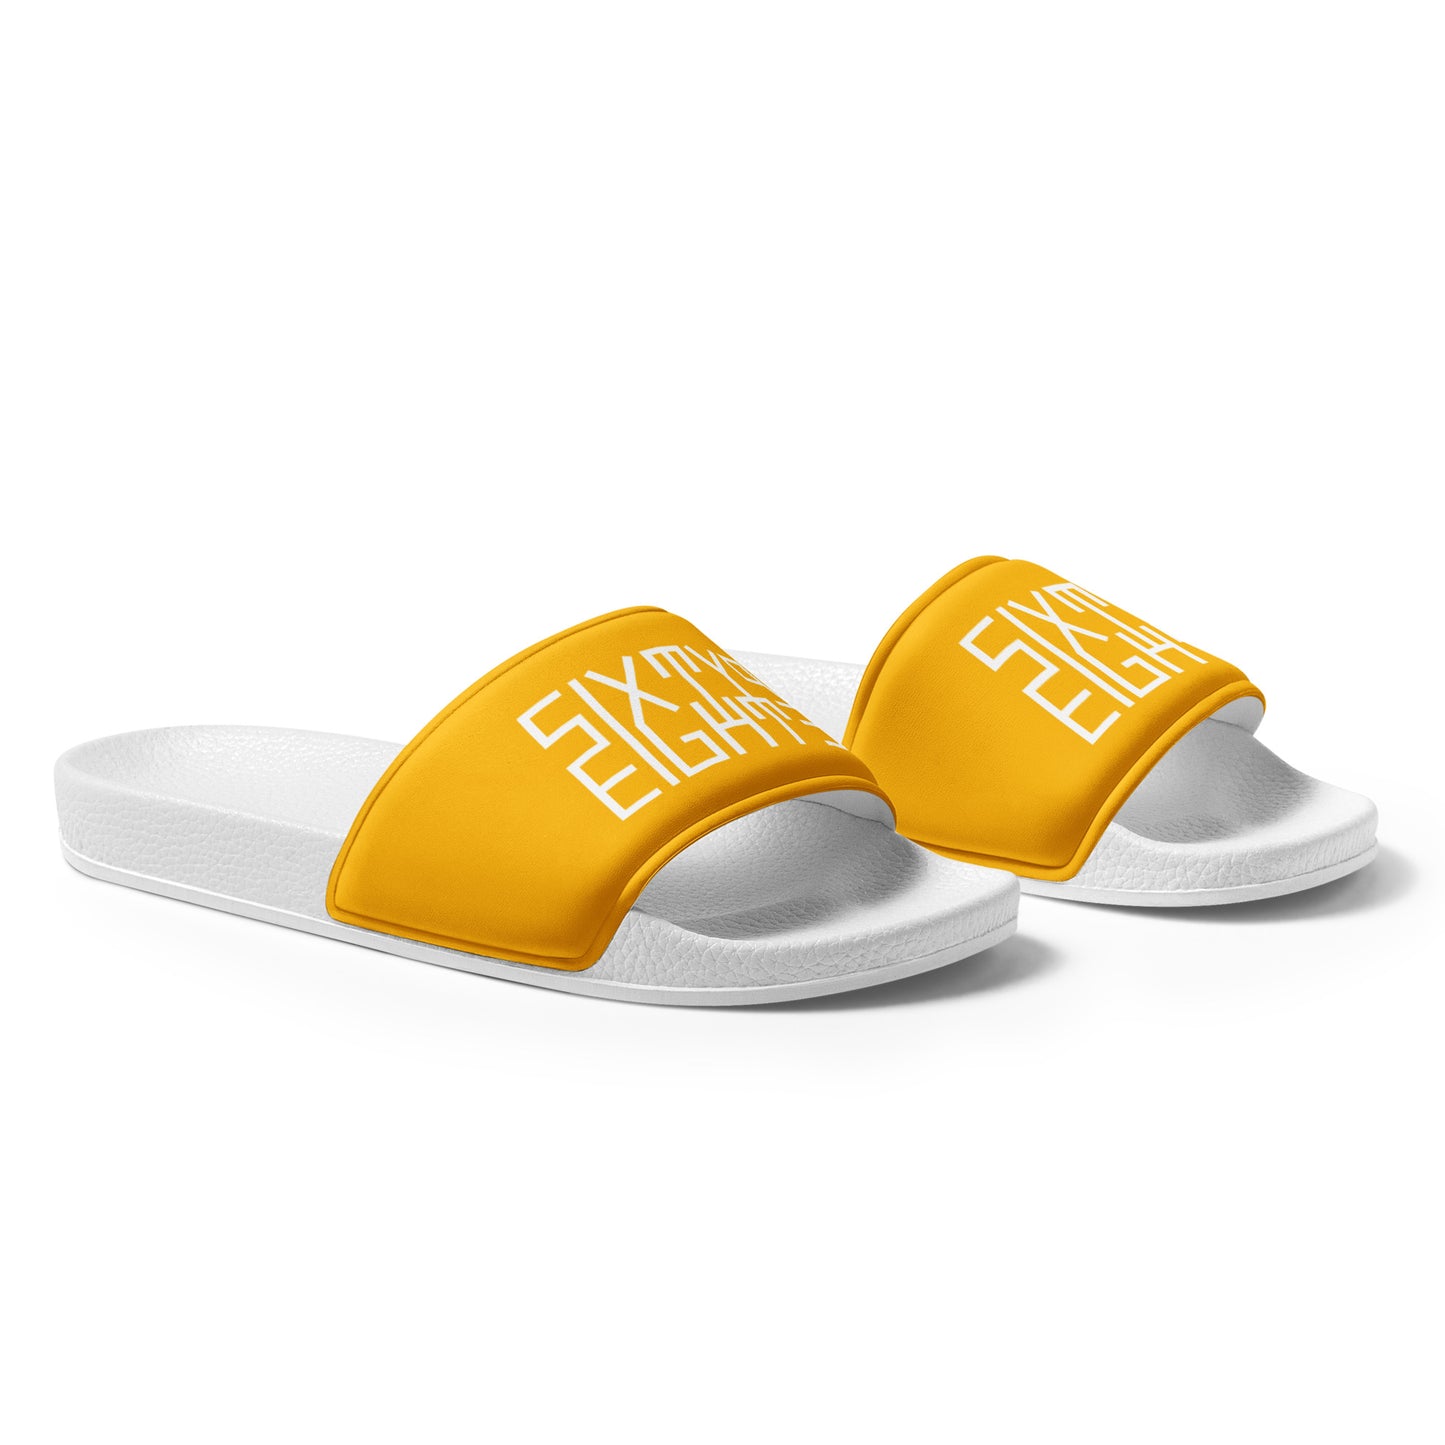 Sixty Eight 93 Logo White & Orange Men's Slides